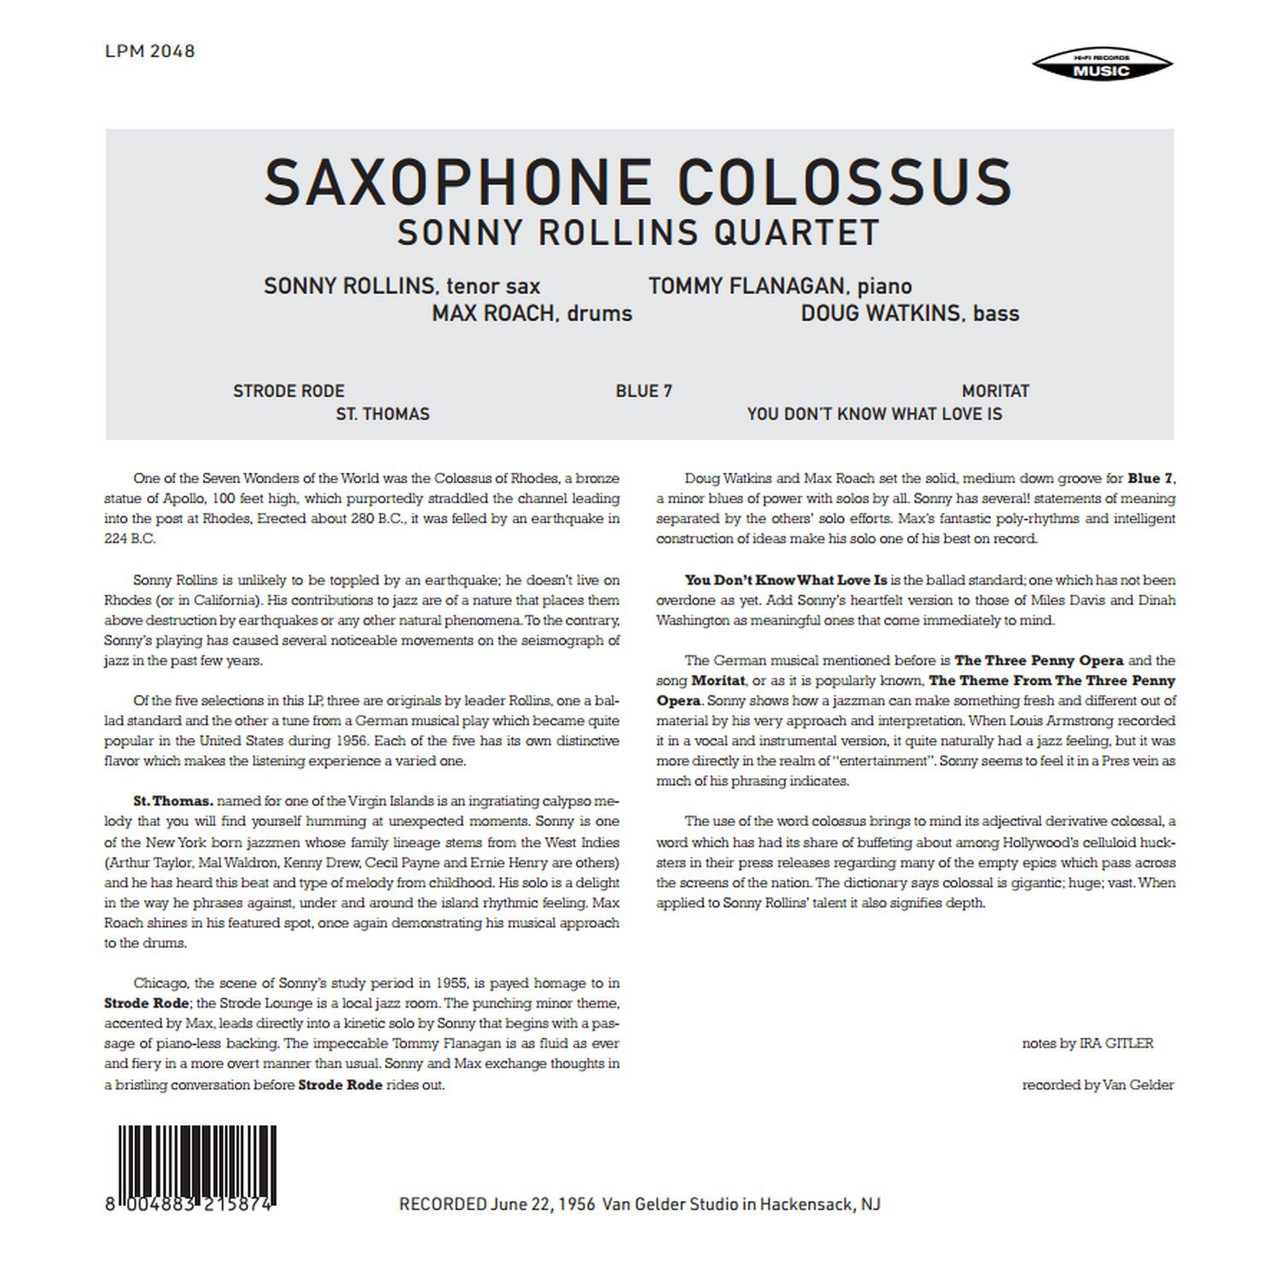 Sonny Rollins Quartet (소니 롤린스 쿼텟) - Saxophone Colossus [LP]